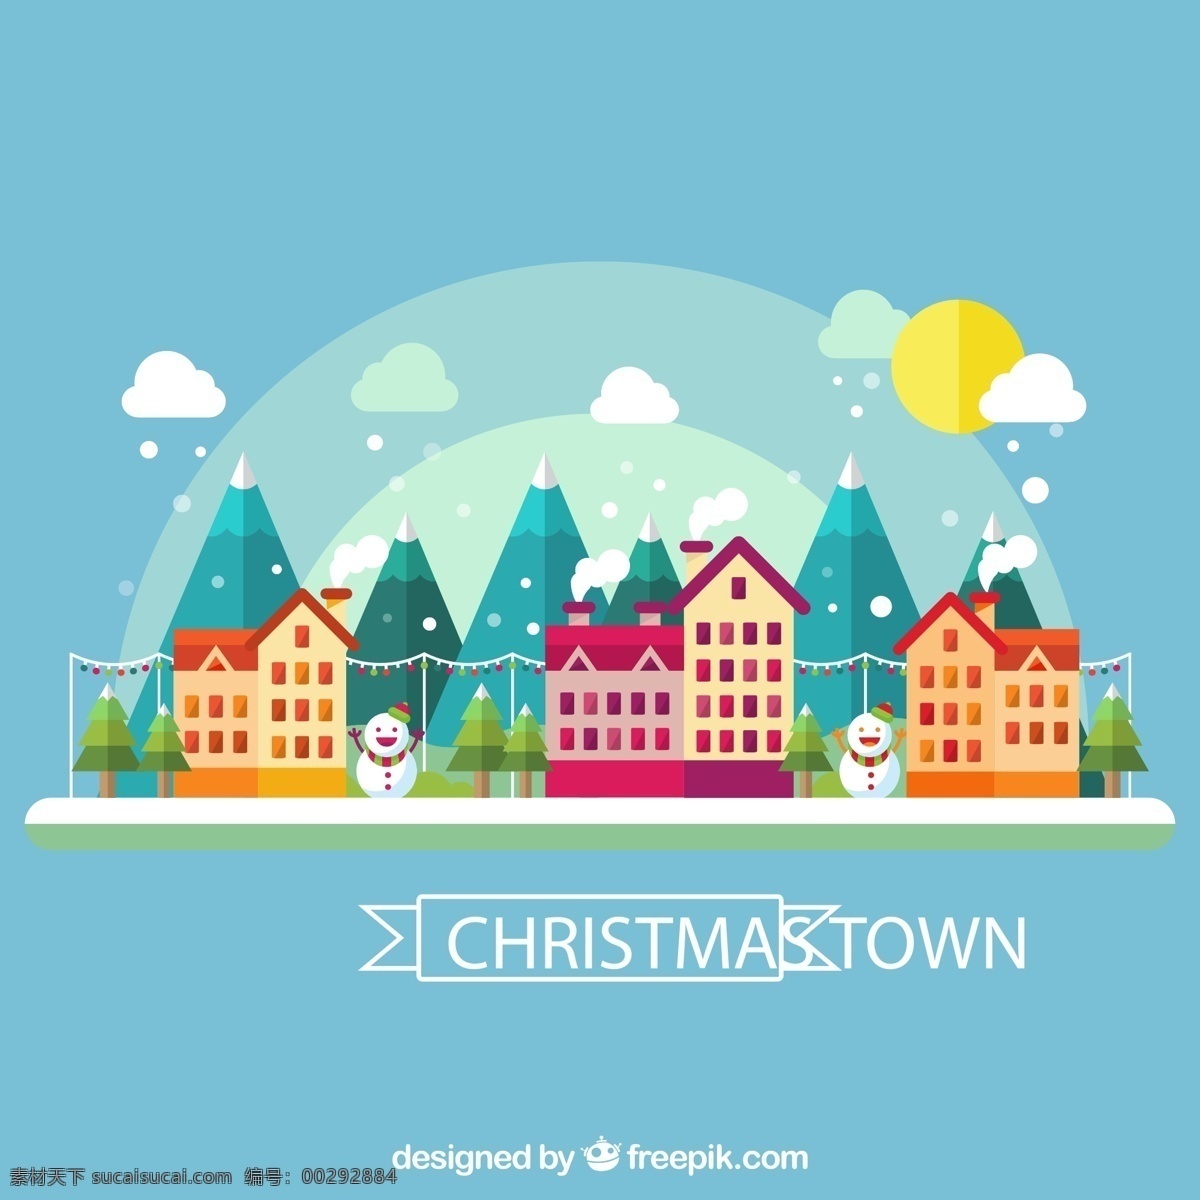 扁平化 城市 建筑 风景 圣诞节 雪人 矢量 高清图片